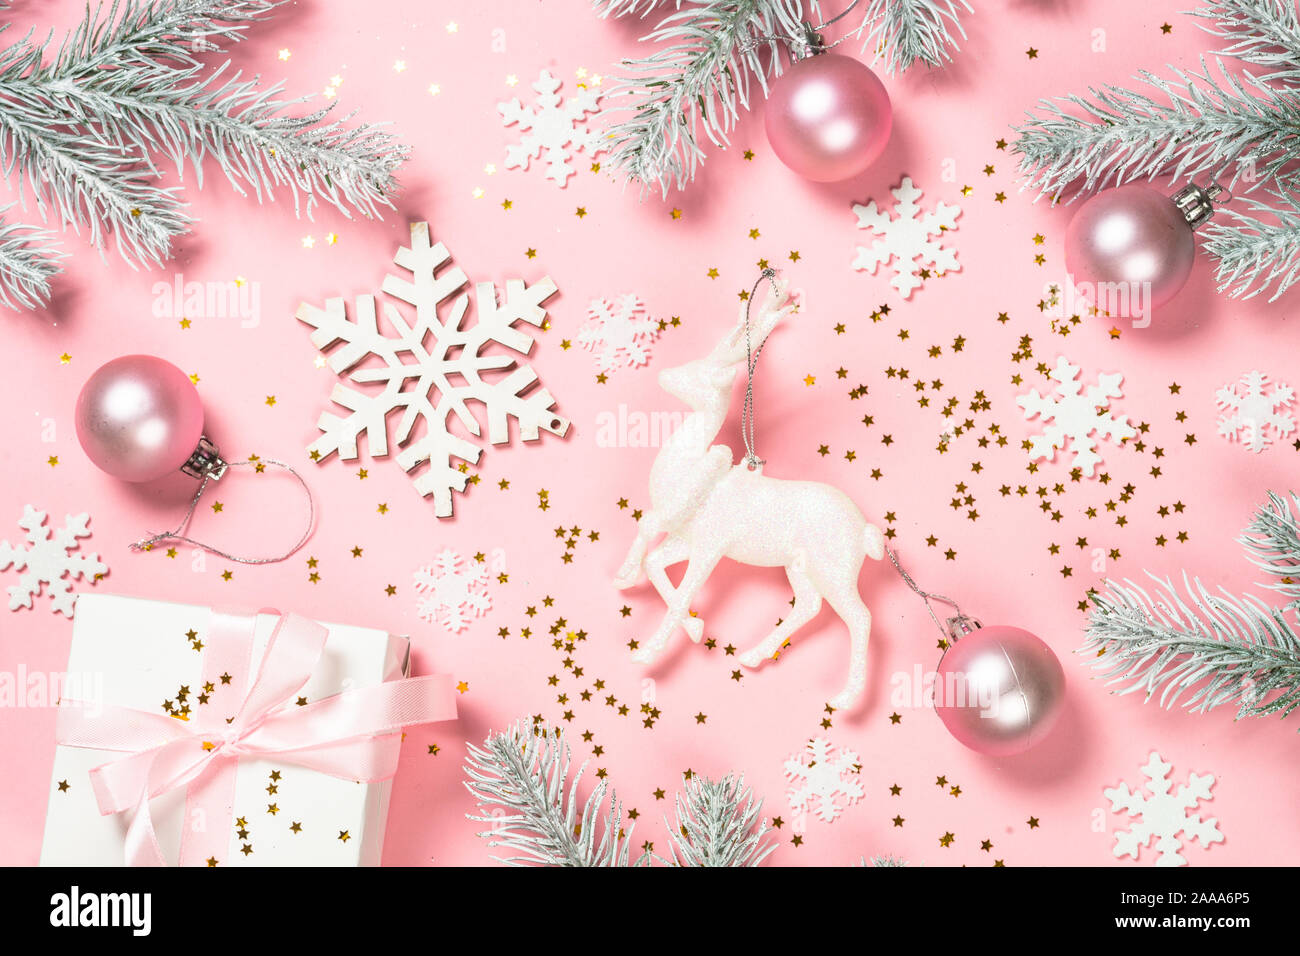 Những hình ảnh phẳng chắc chắn sẽ làm cho bối cảnh Giáng Sinh nhà bạn trở nên thêm phần cuốn hút. Hãy cùng thưởng thức vẻ đẹp tinh tế của gam màu hồng trong không gian lễ hội ấm áp này.